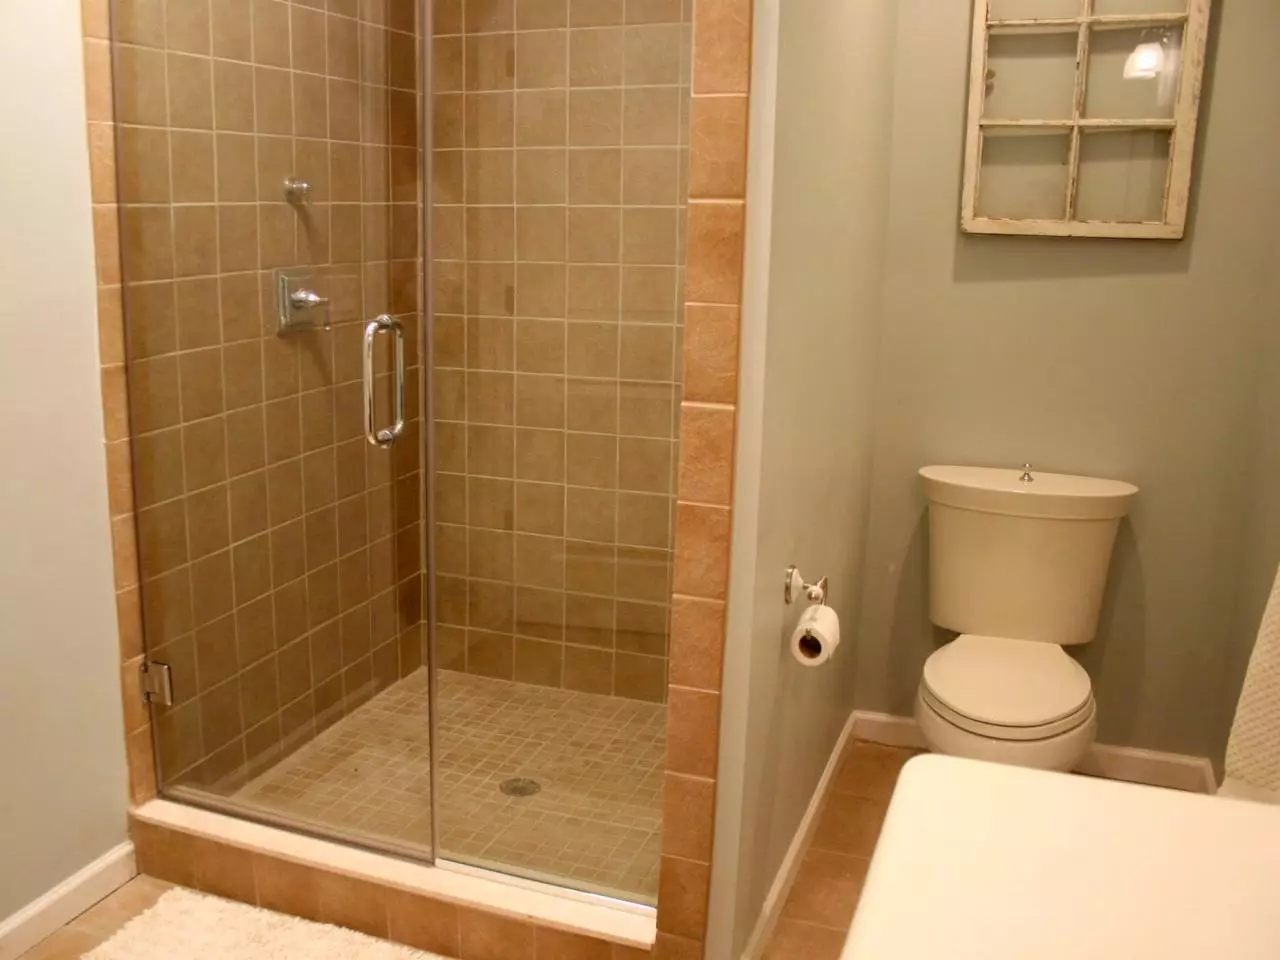 Stort in die badkamer sonder kajuit (86 foto's): Badkamer ontwerp opsies met stort sonder palet en teël tente, projekte 21384_9